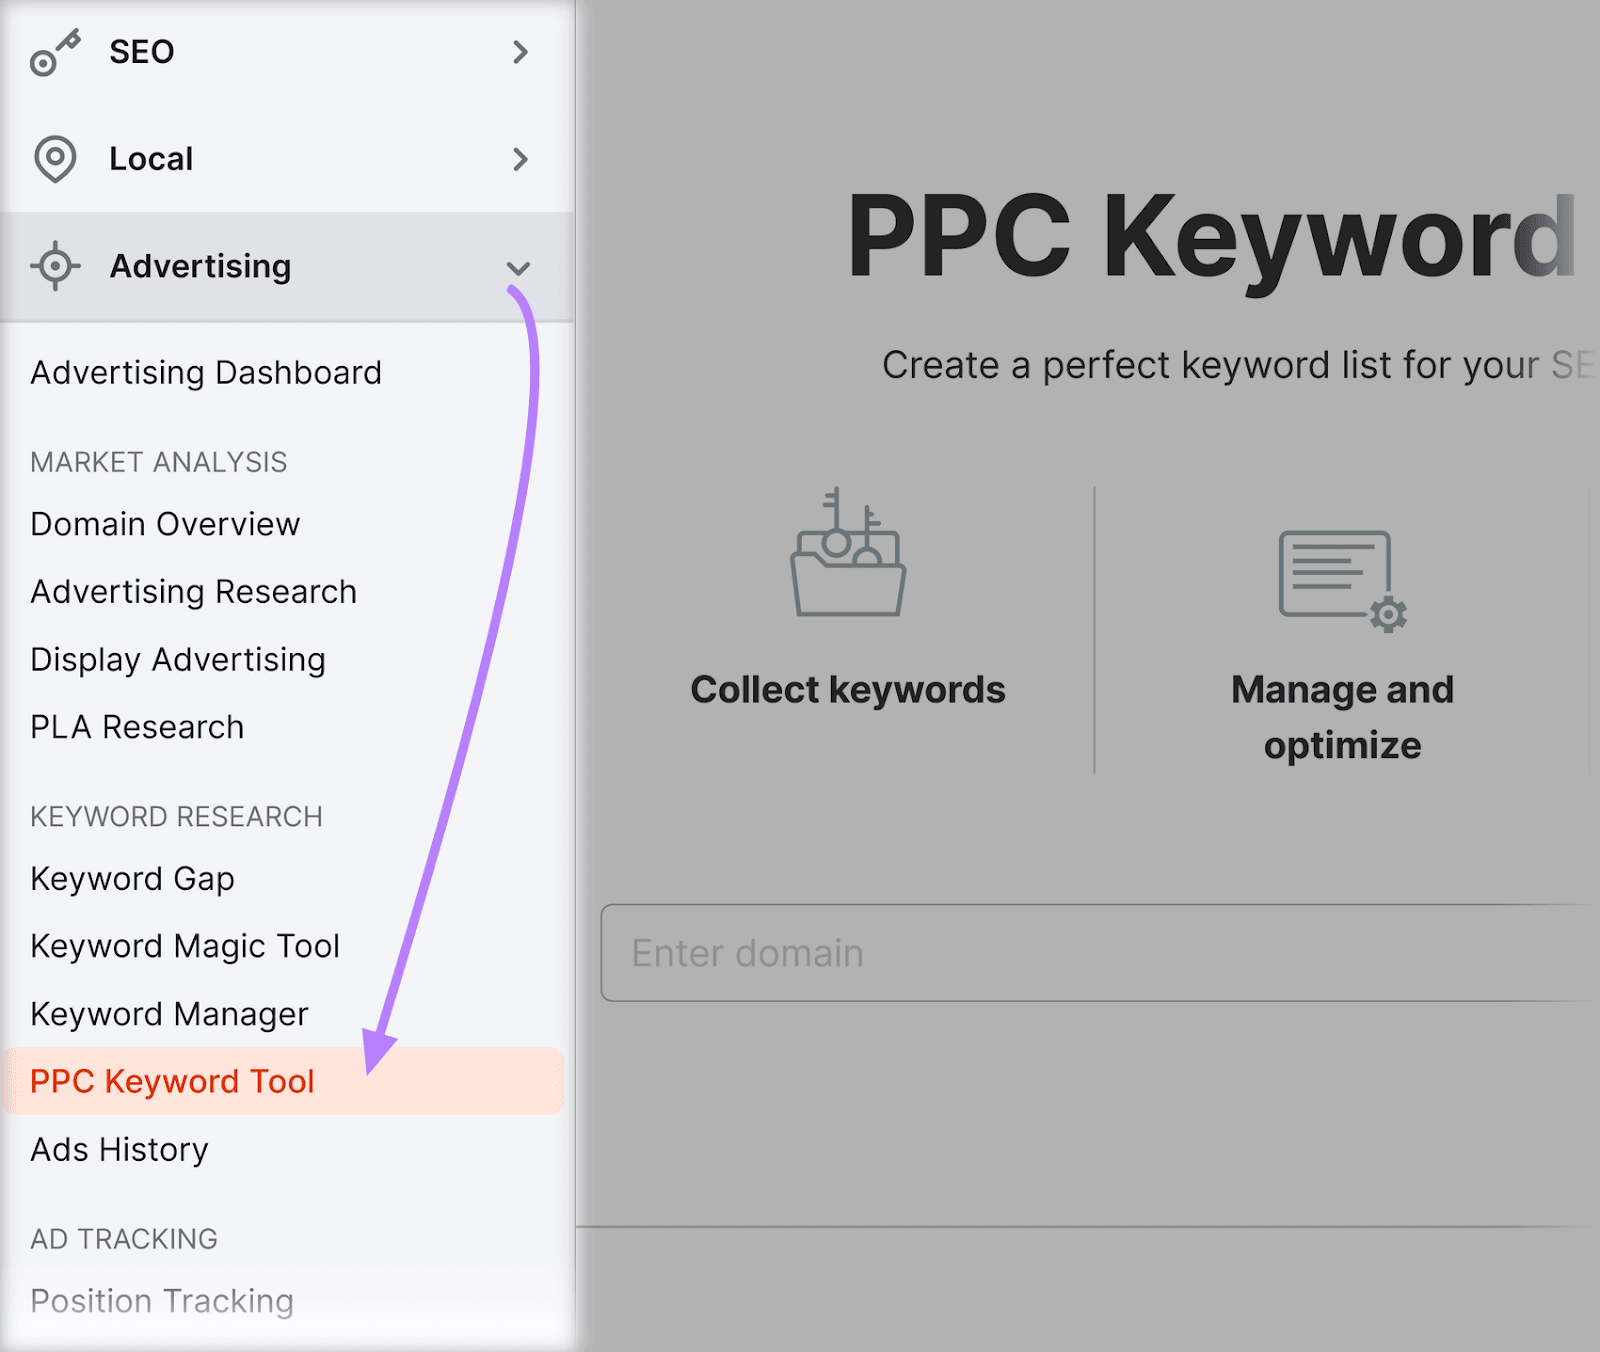 Navigating to "PPC Keyword Tool" in Semrush menu